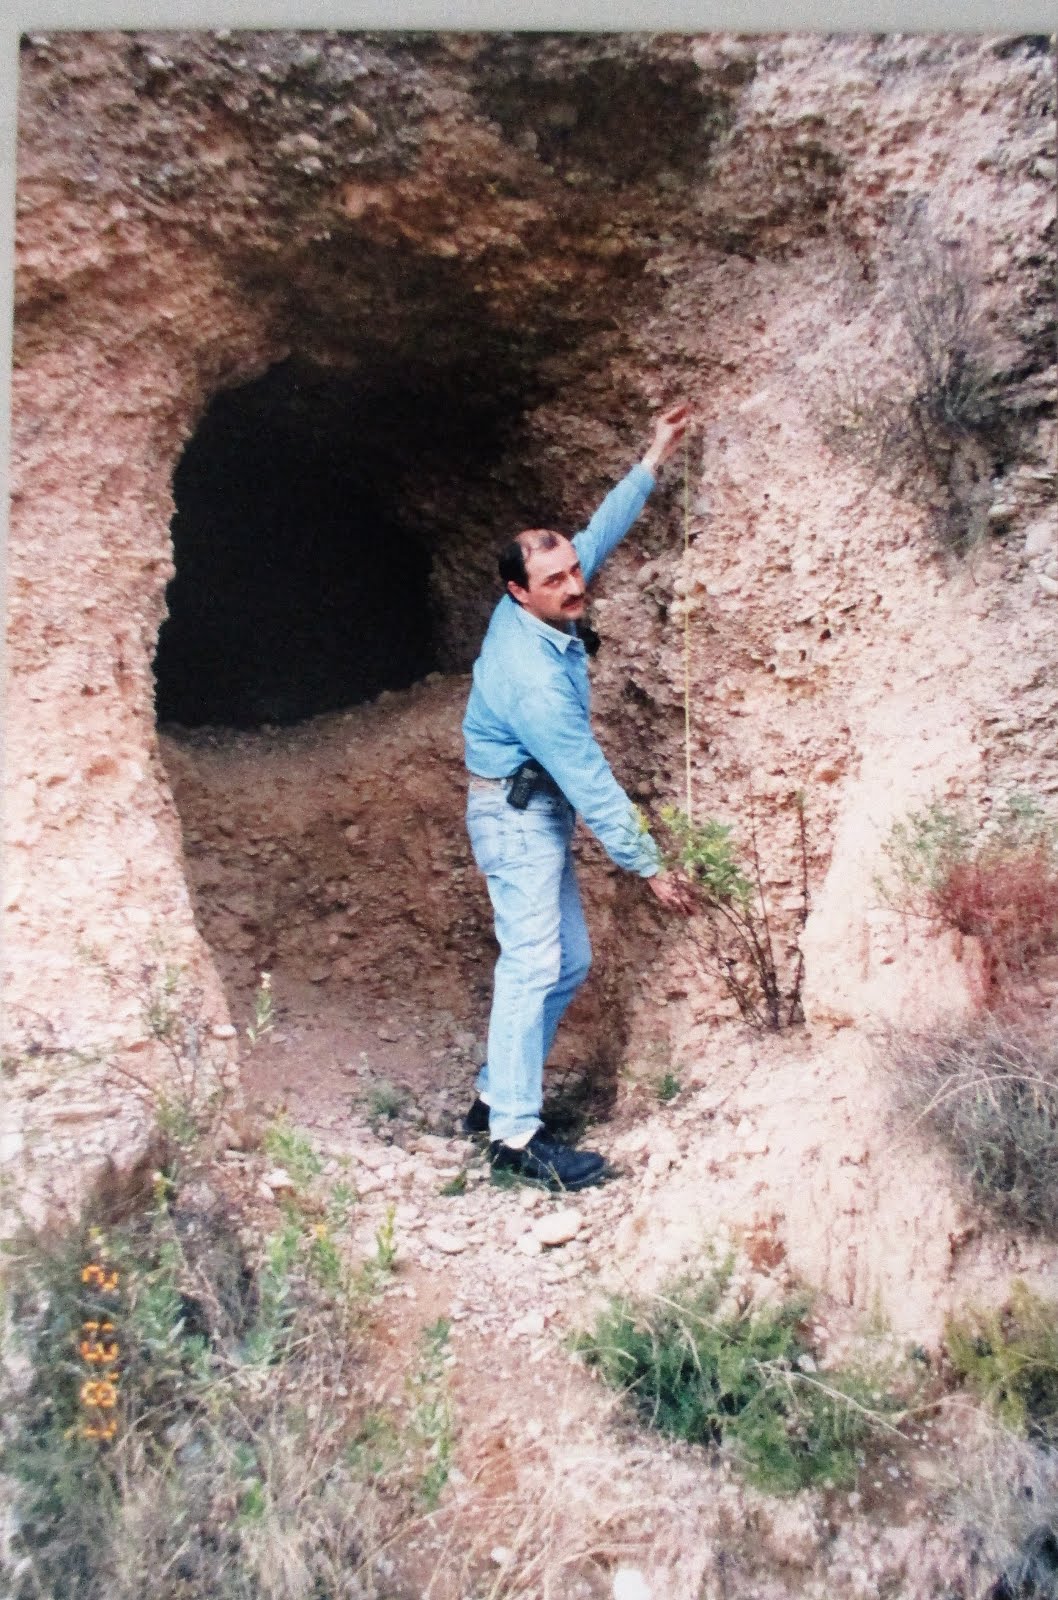 Haciendo mediciones,tramo subterraneo acueducto romano,1998